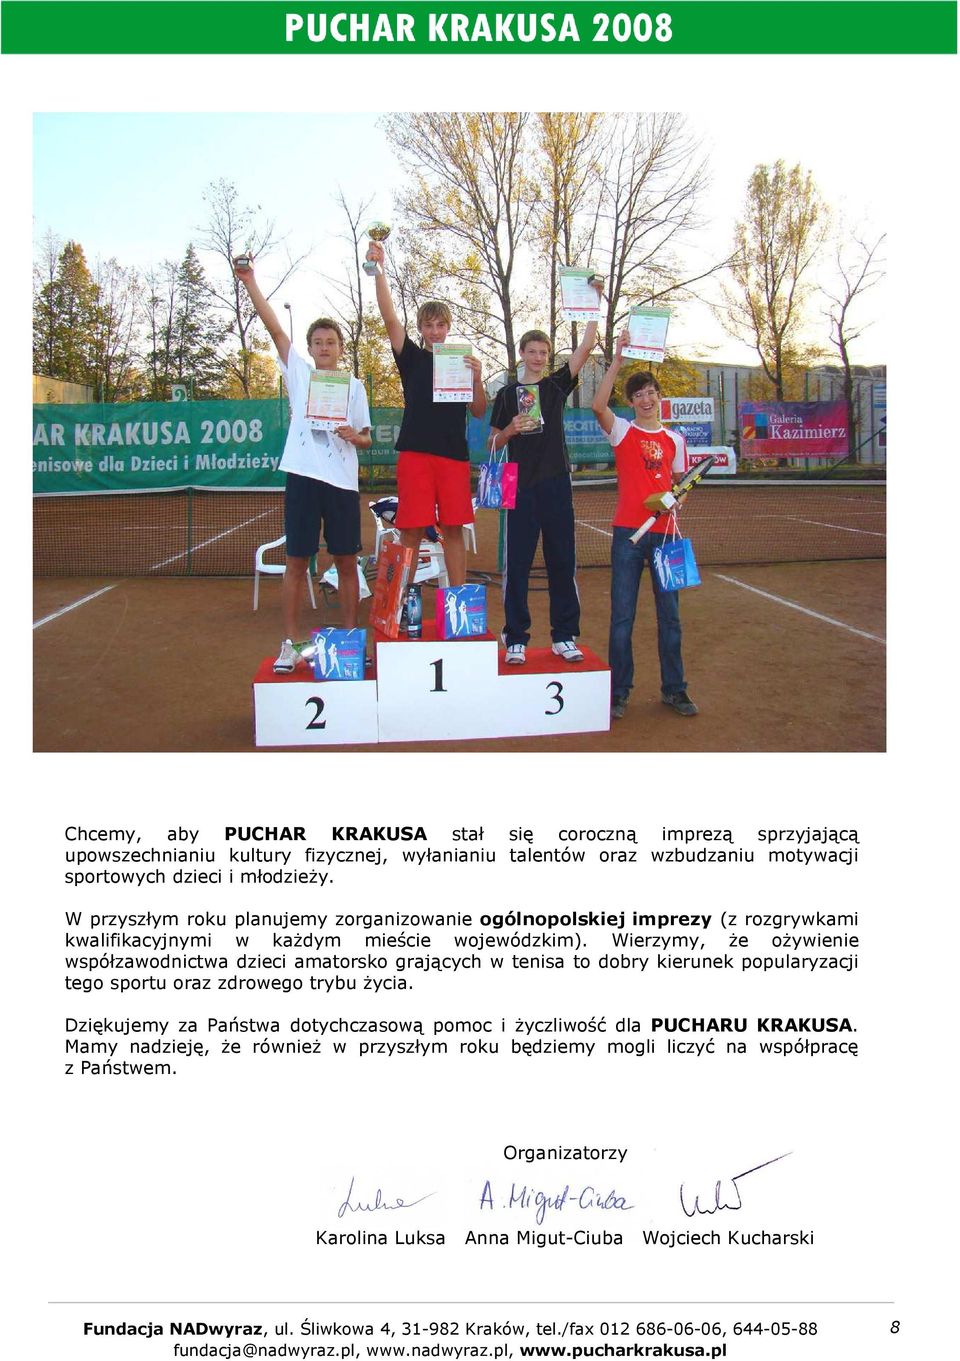 Wierzymy, Ŝe oŝywienie współzawodnictwa dzieci amatorsko grających w tenisa to dobry kierunek popularyzacji tego sportu oraz zdrowego trybu Ŝycia.